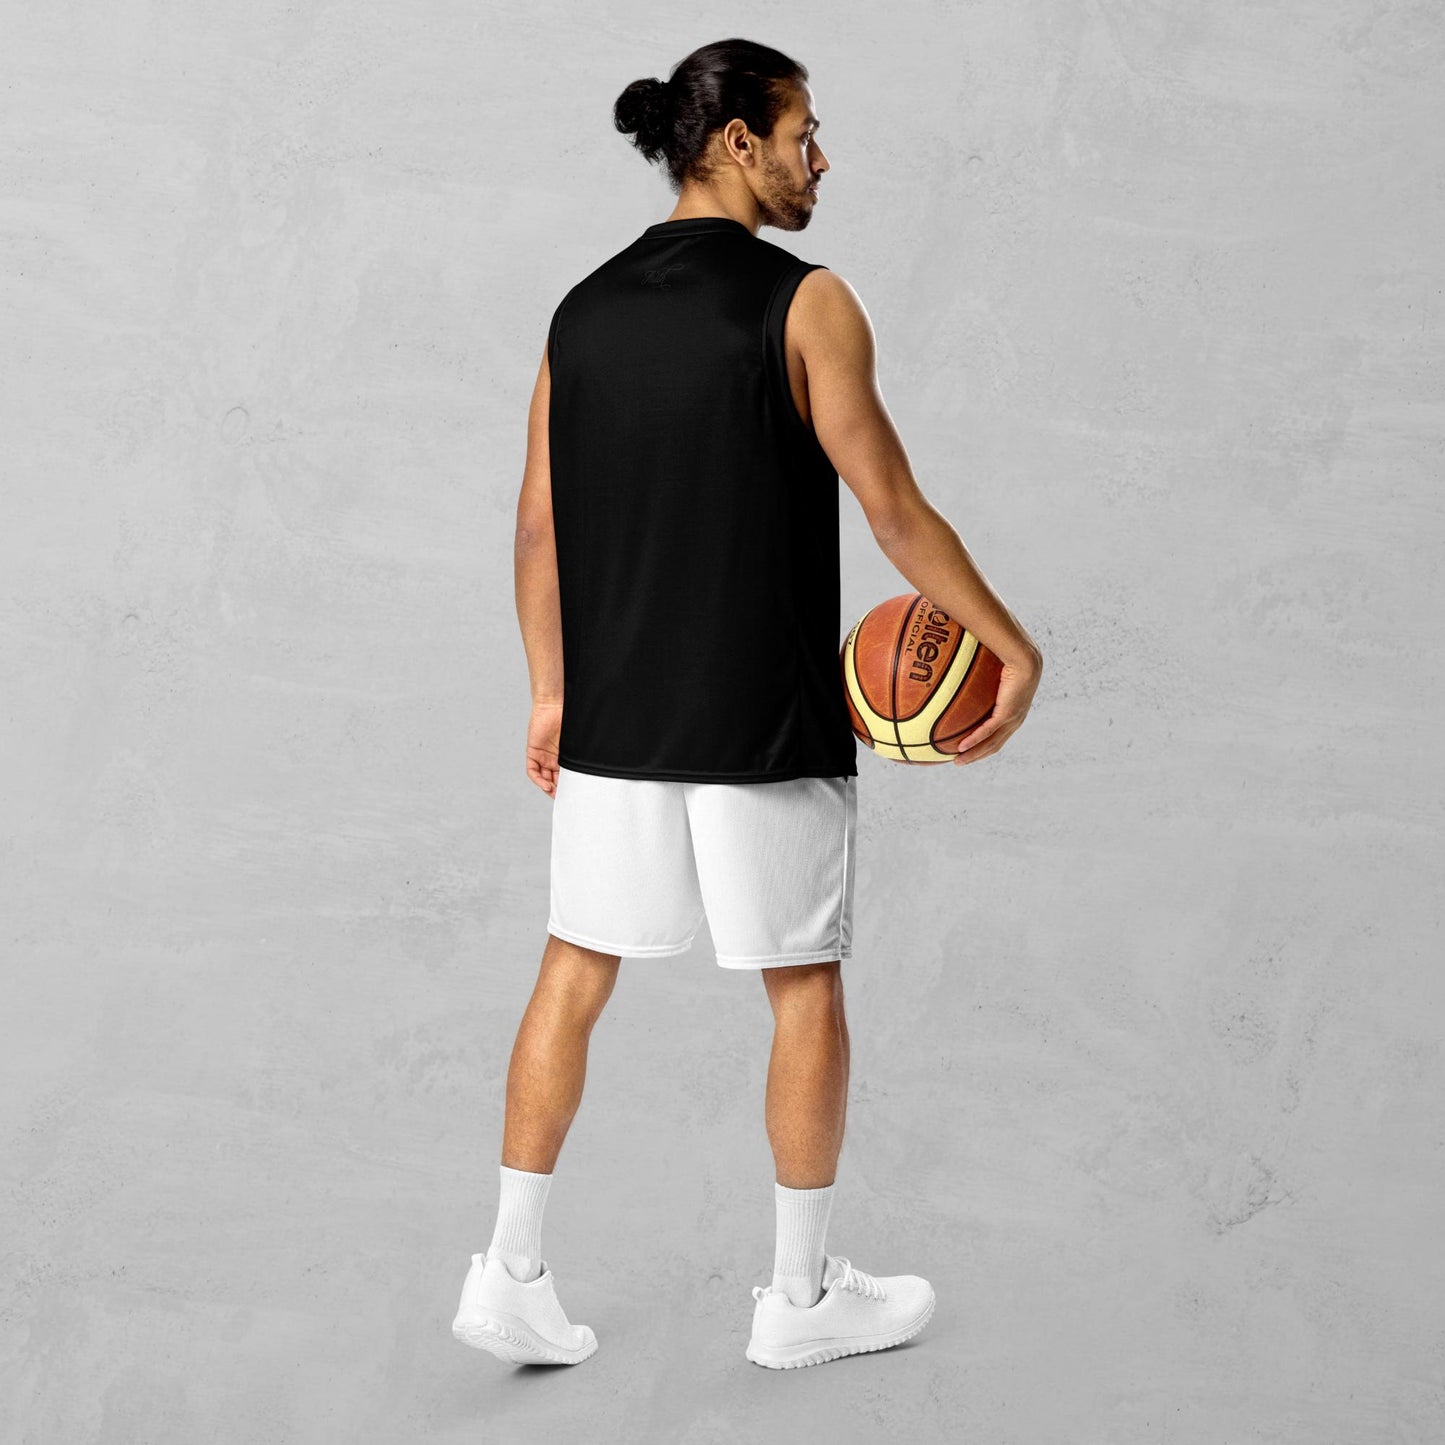 J.A Faith Black basketball jersey